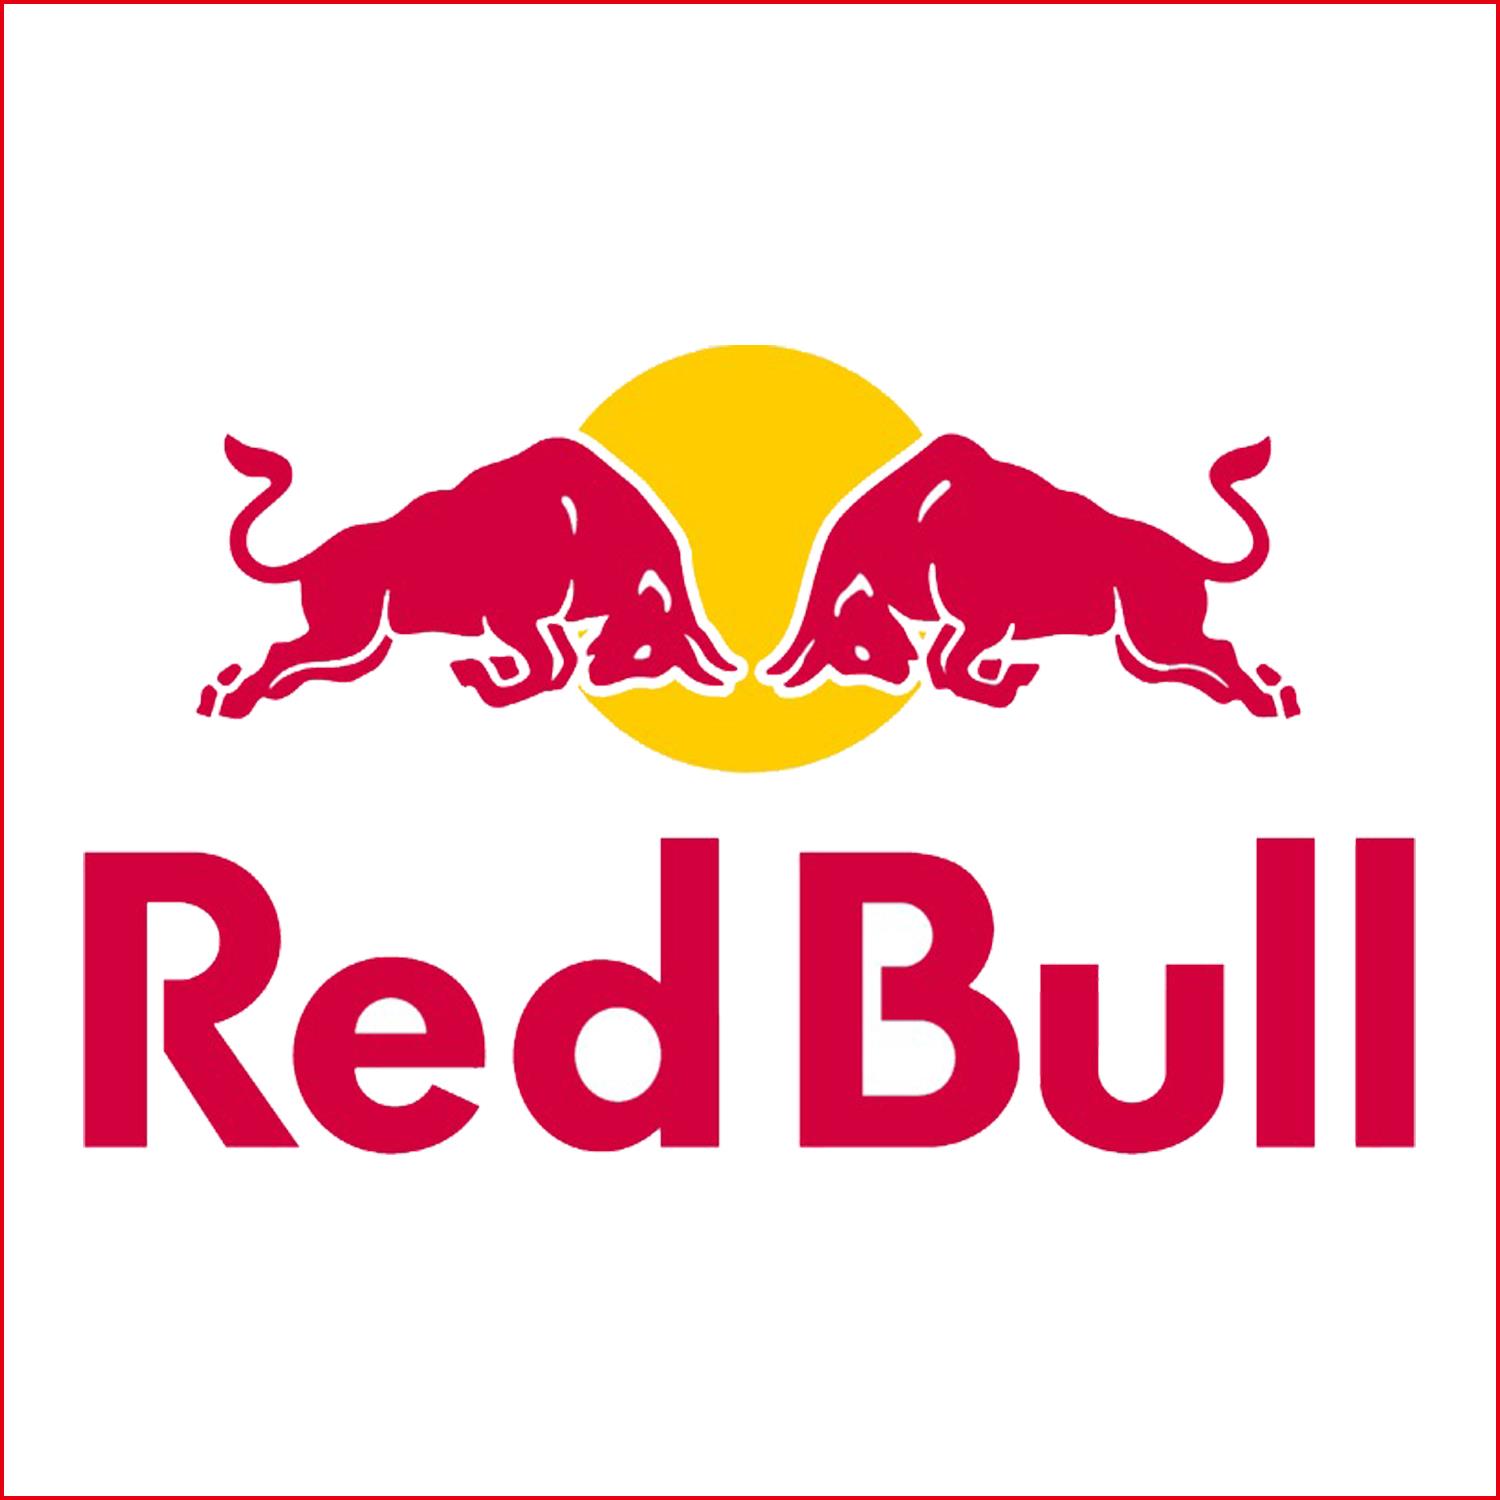 紅牛 Red Bull